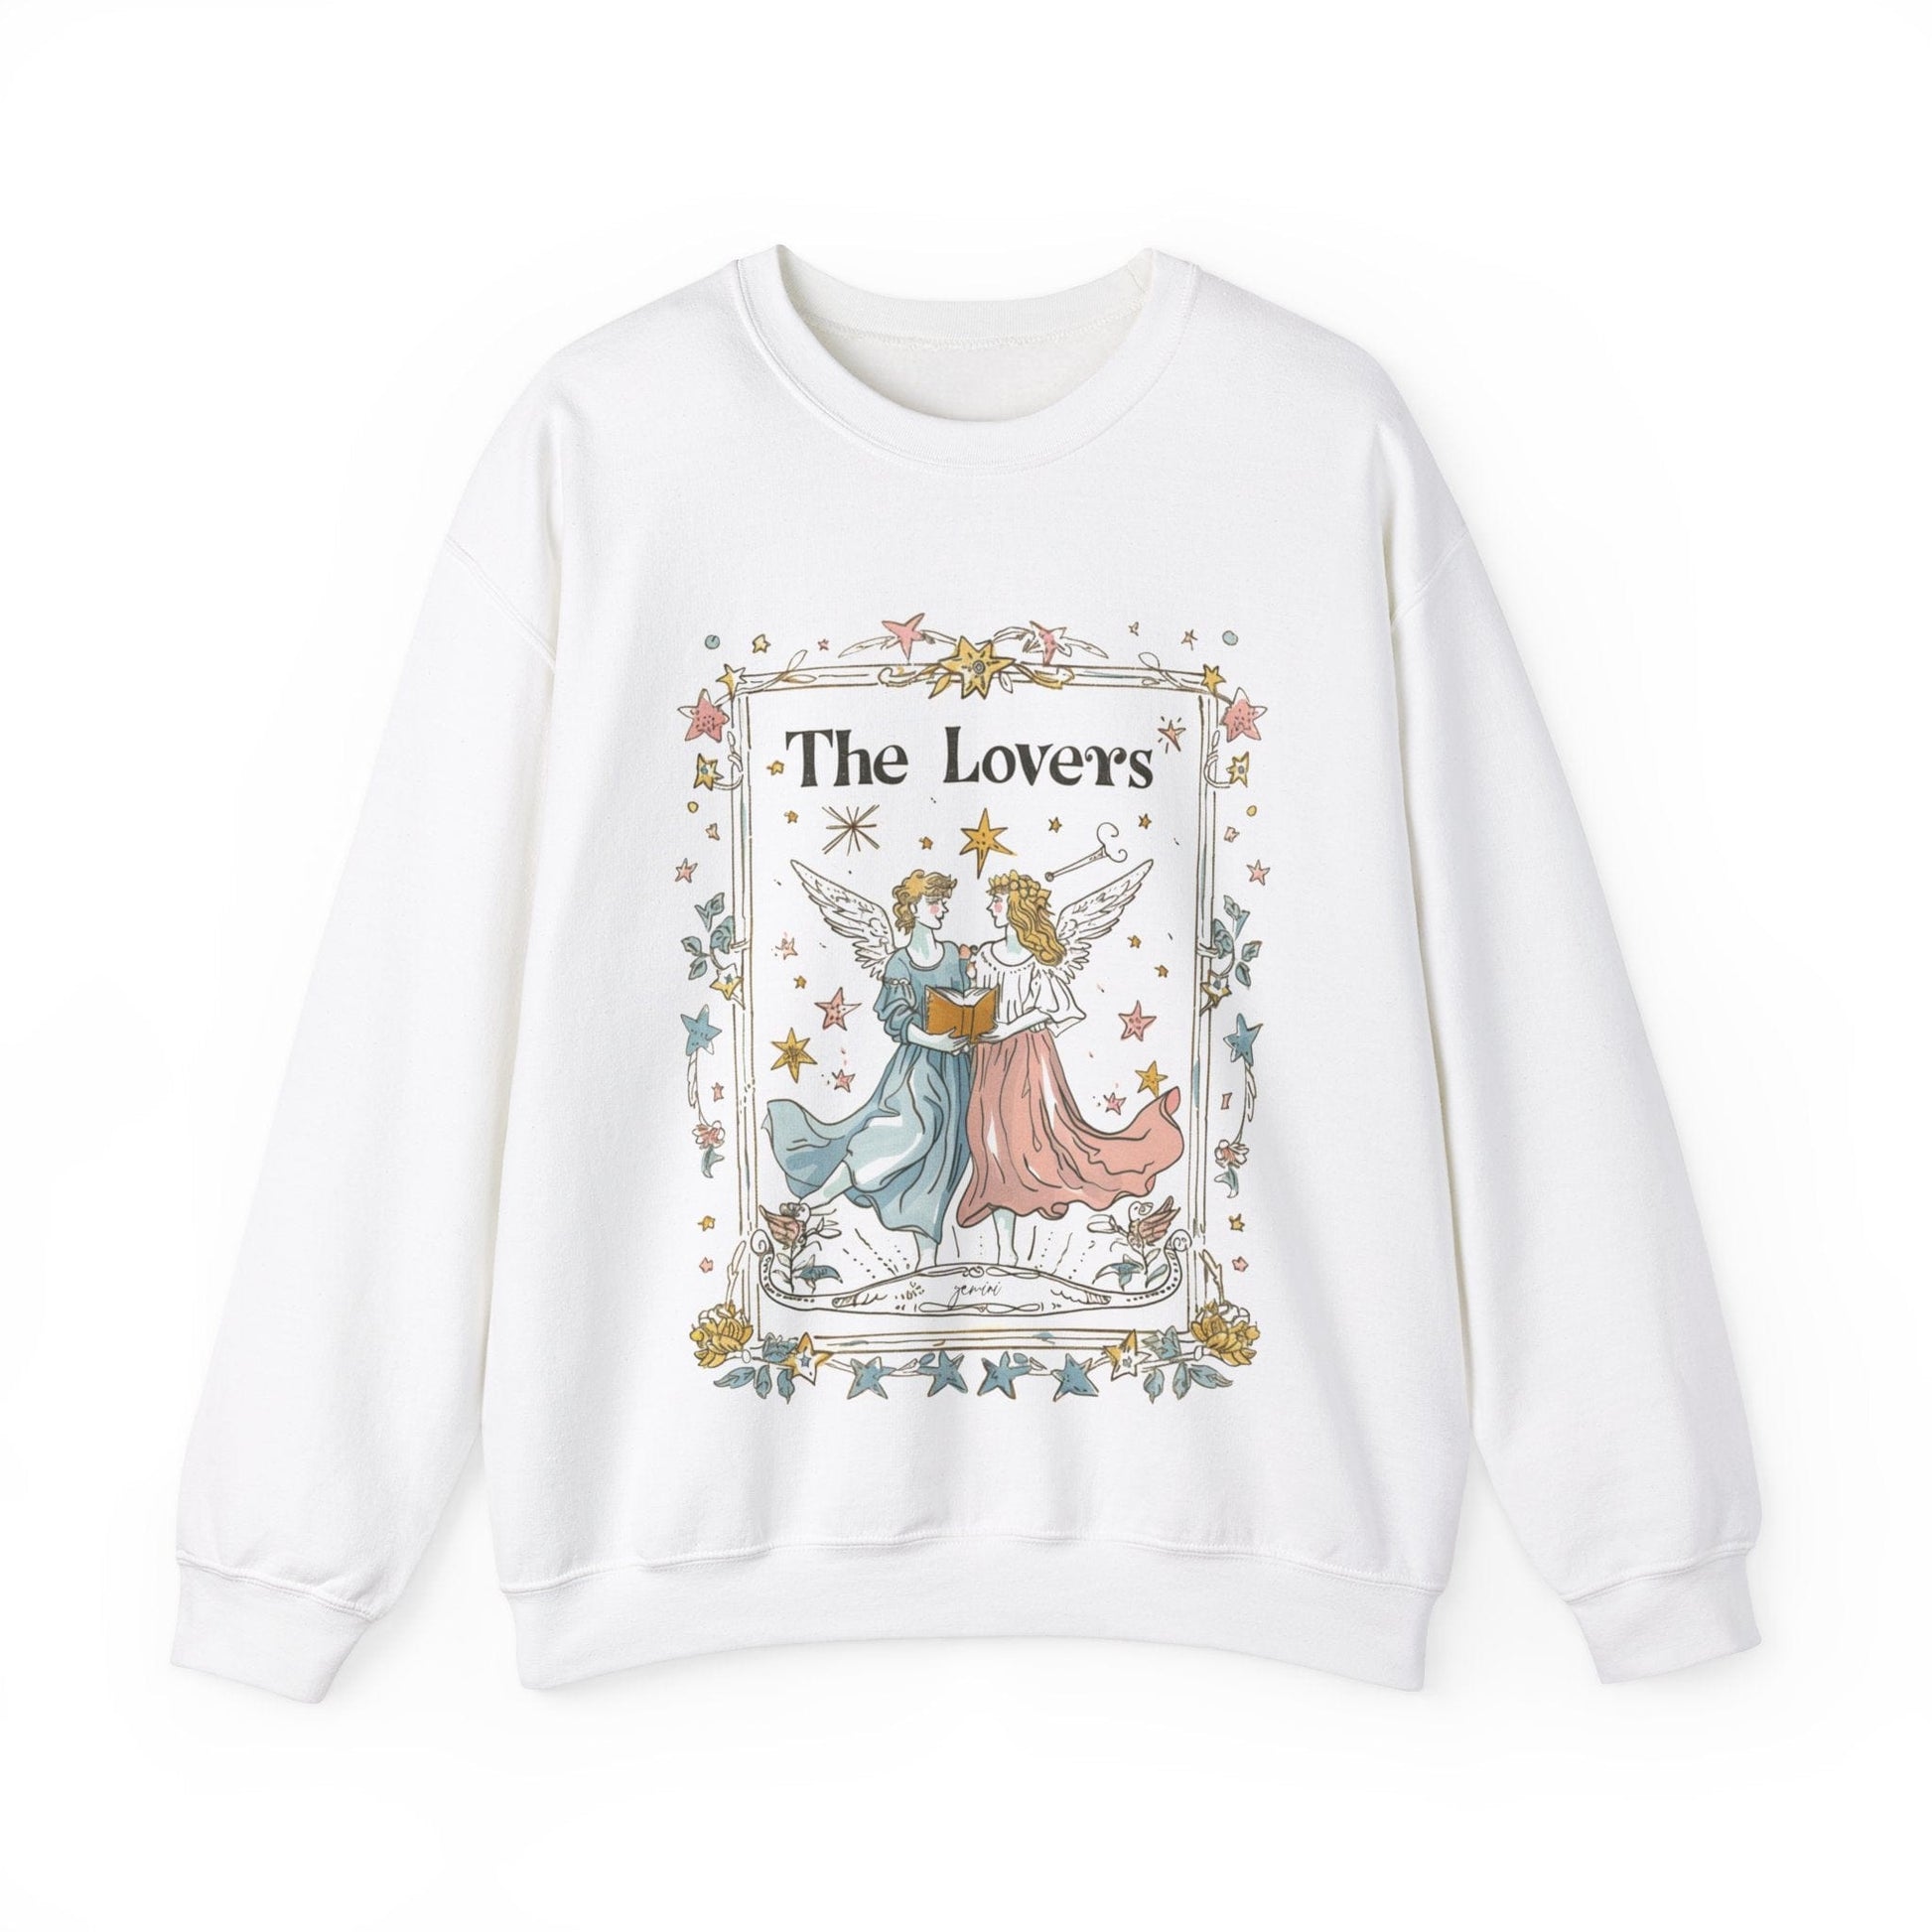 Sweatshirt S / White The Lovers Gemini Sweater